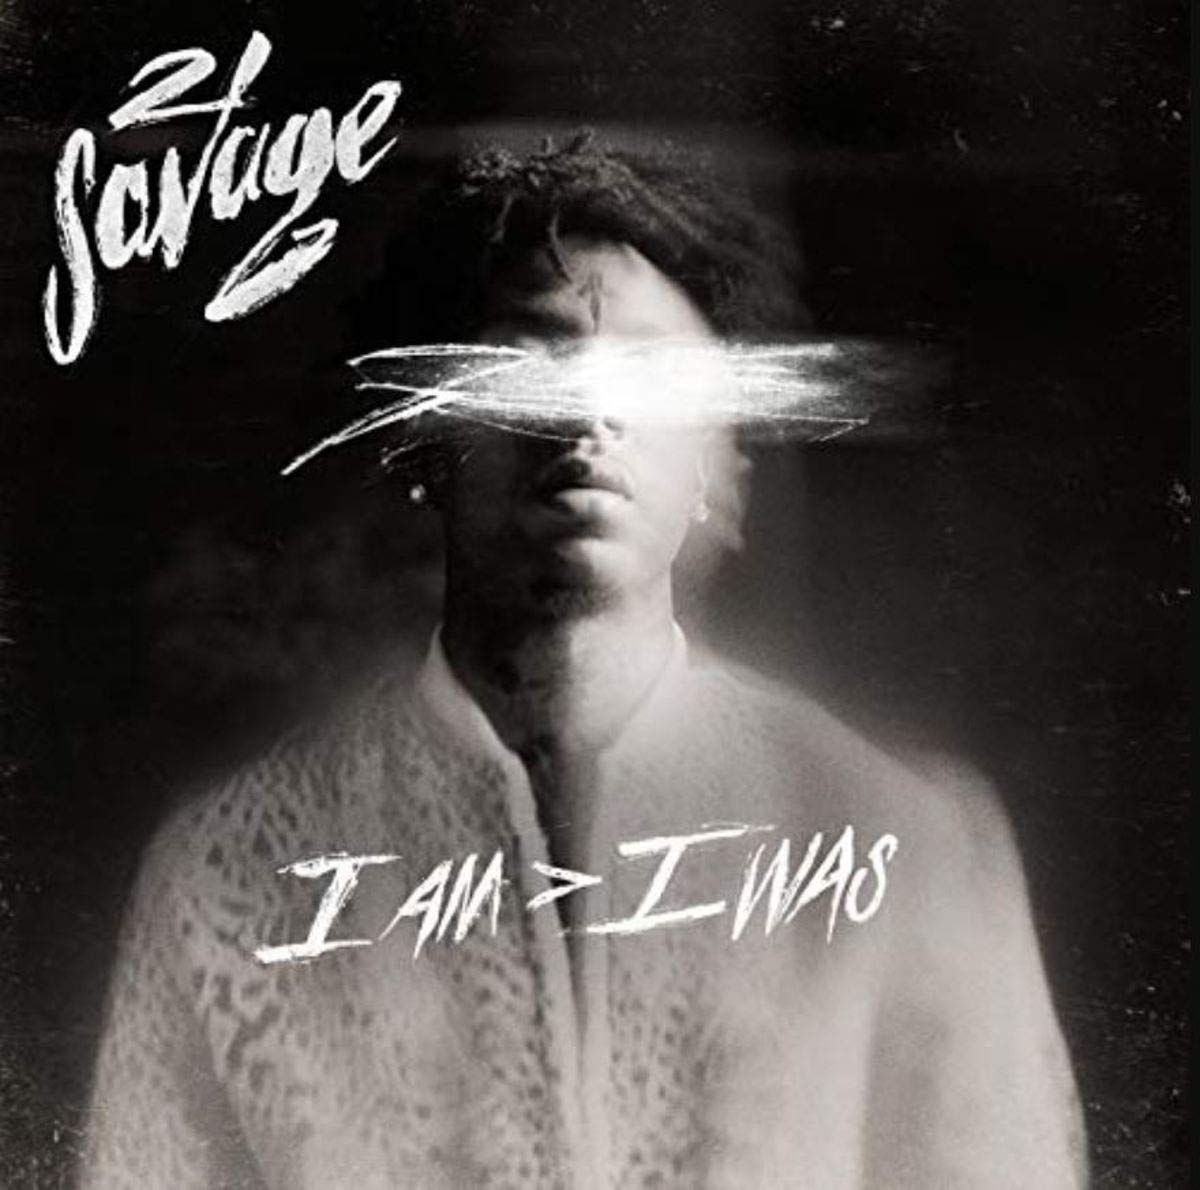 21 SAVAGE - I AM I WAS Vinyl LP